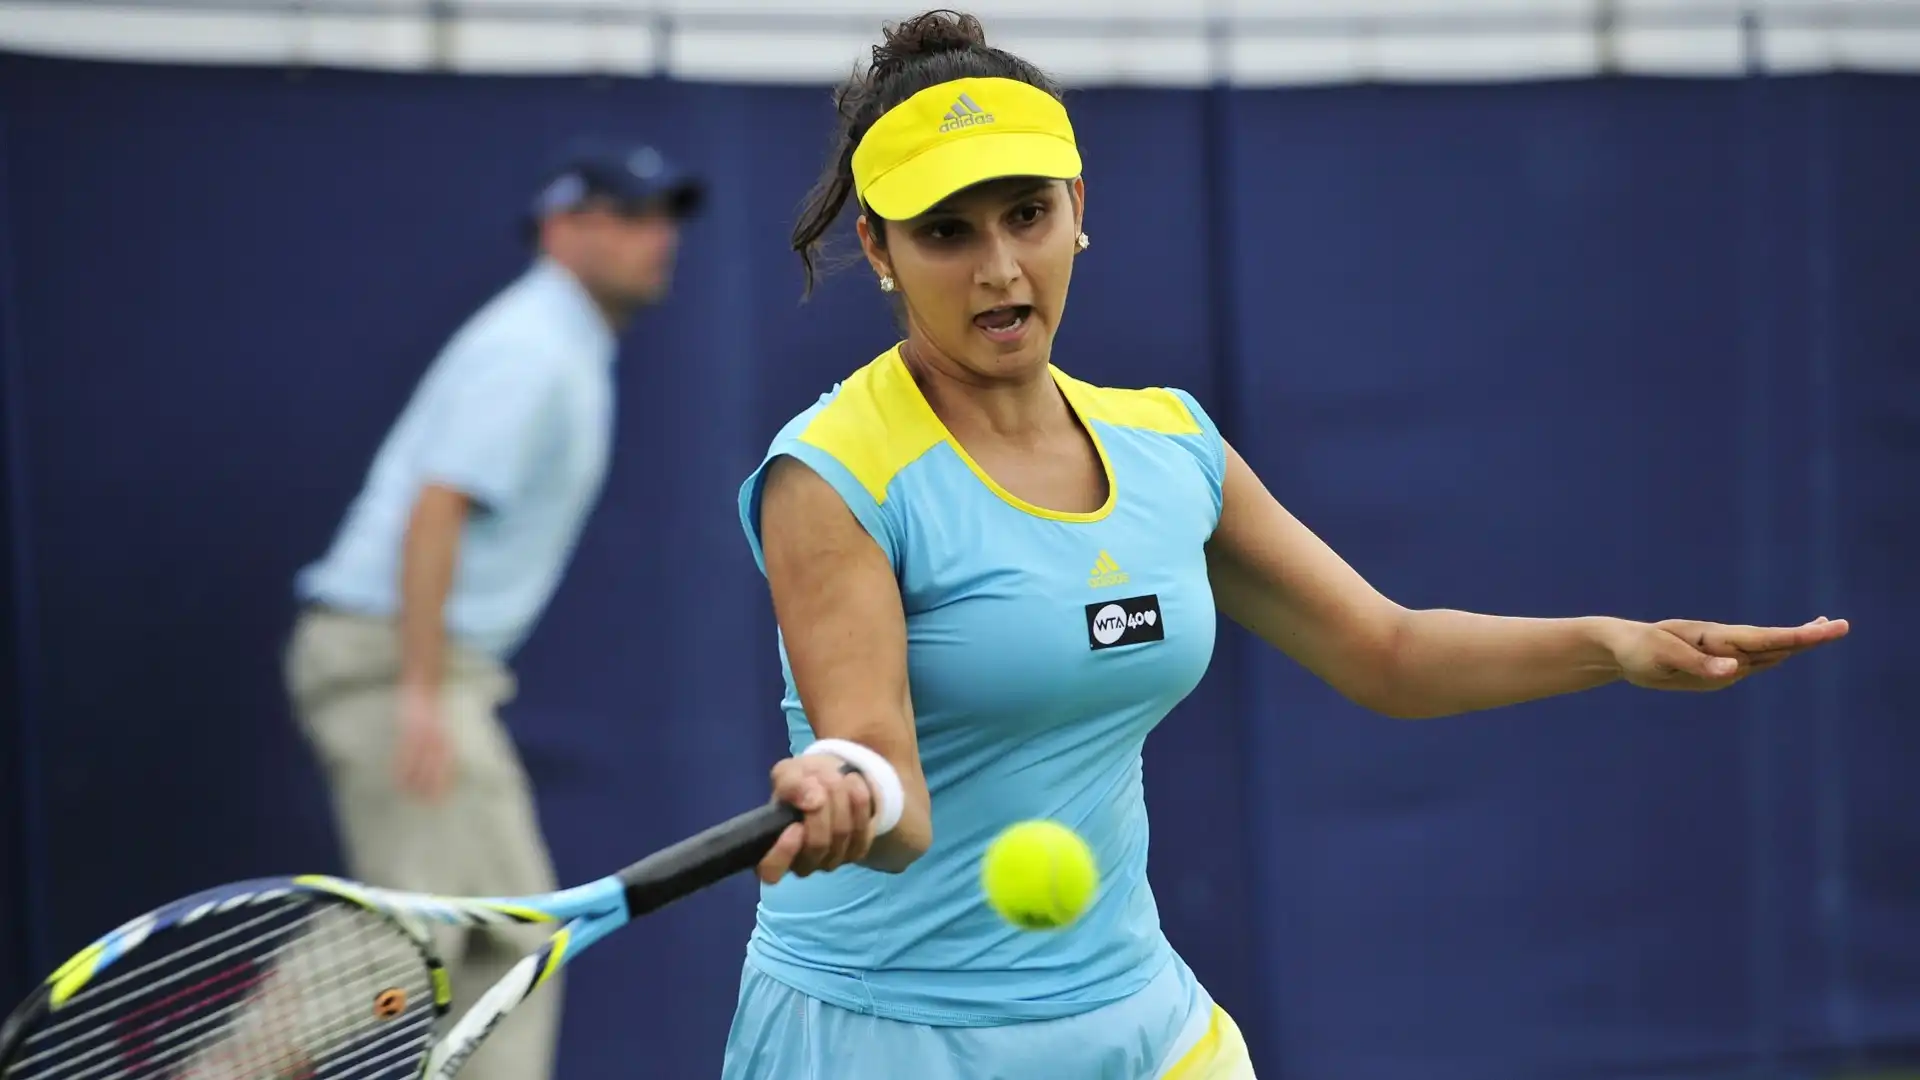 Sania Mirza (Tennis): stipendio annuale 377mila dollari